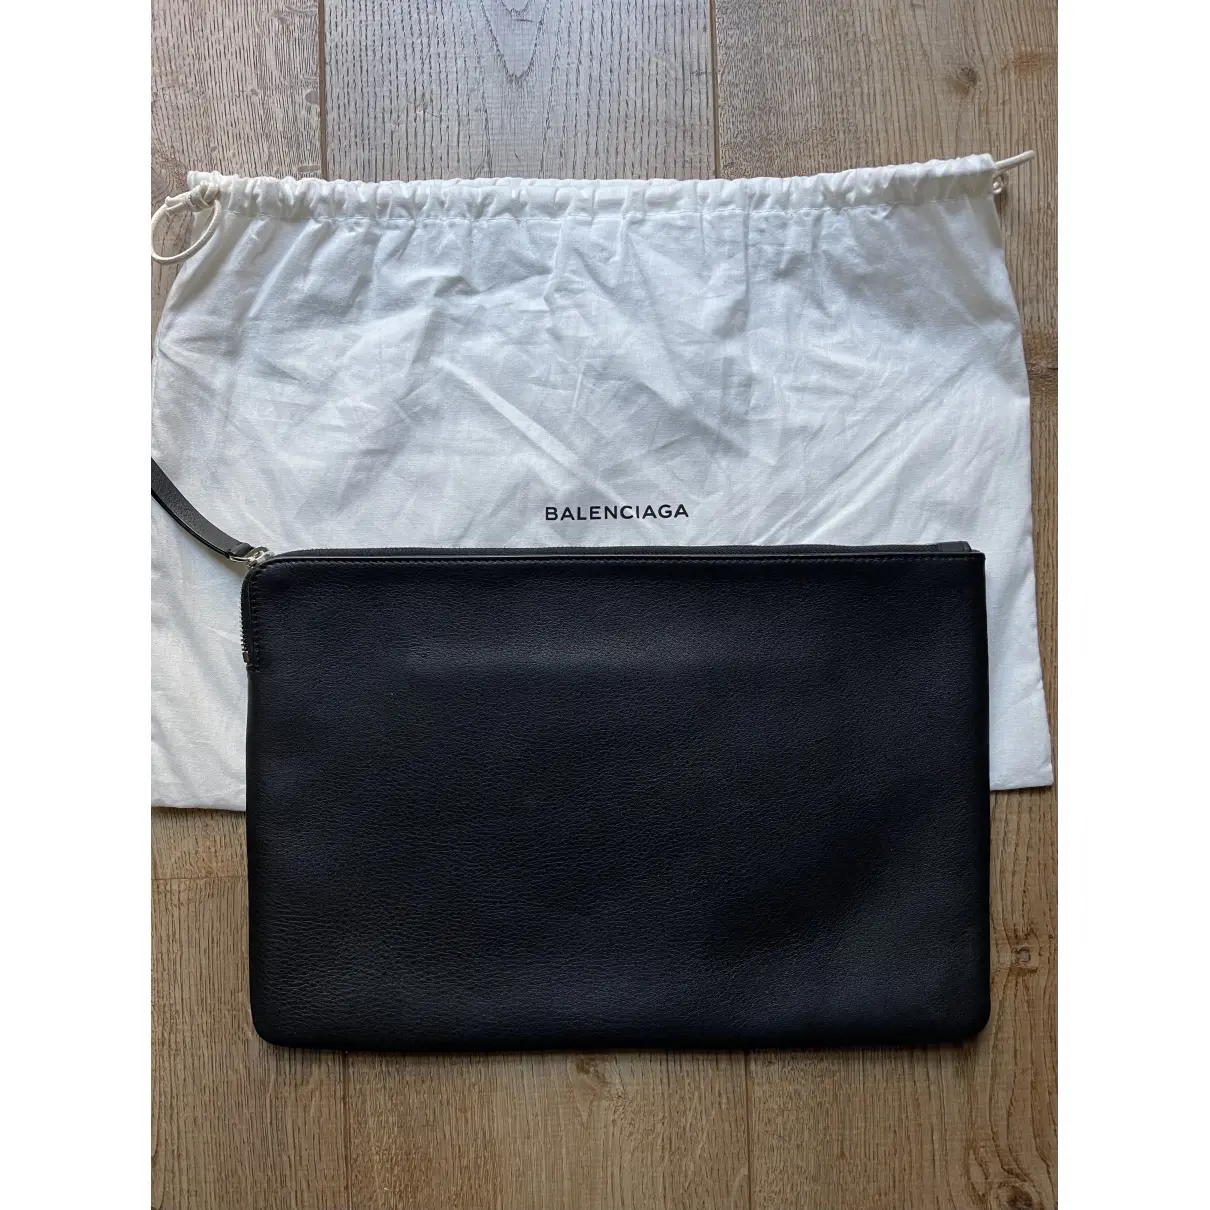 Buy Balenciaga Leather clutch bag online